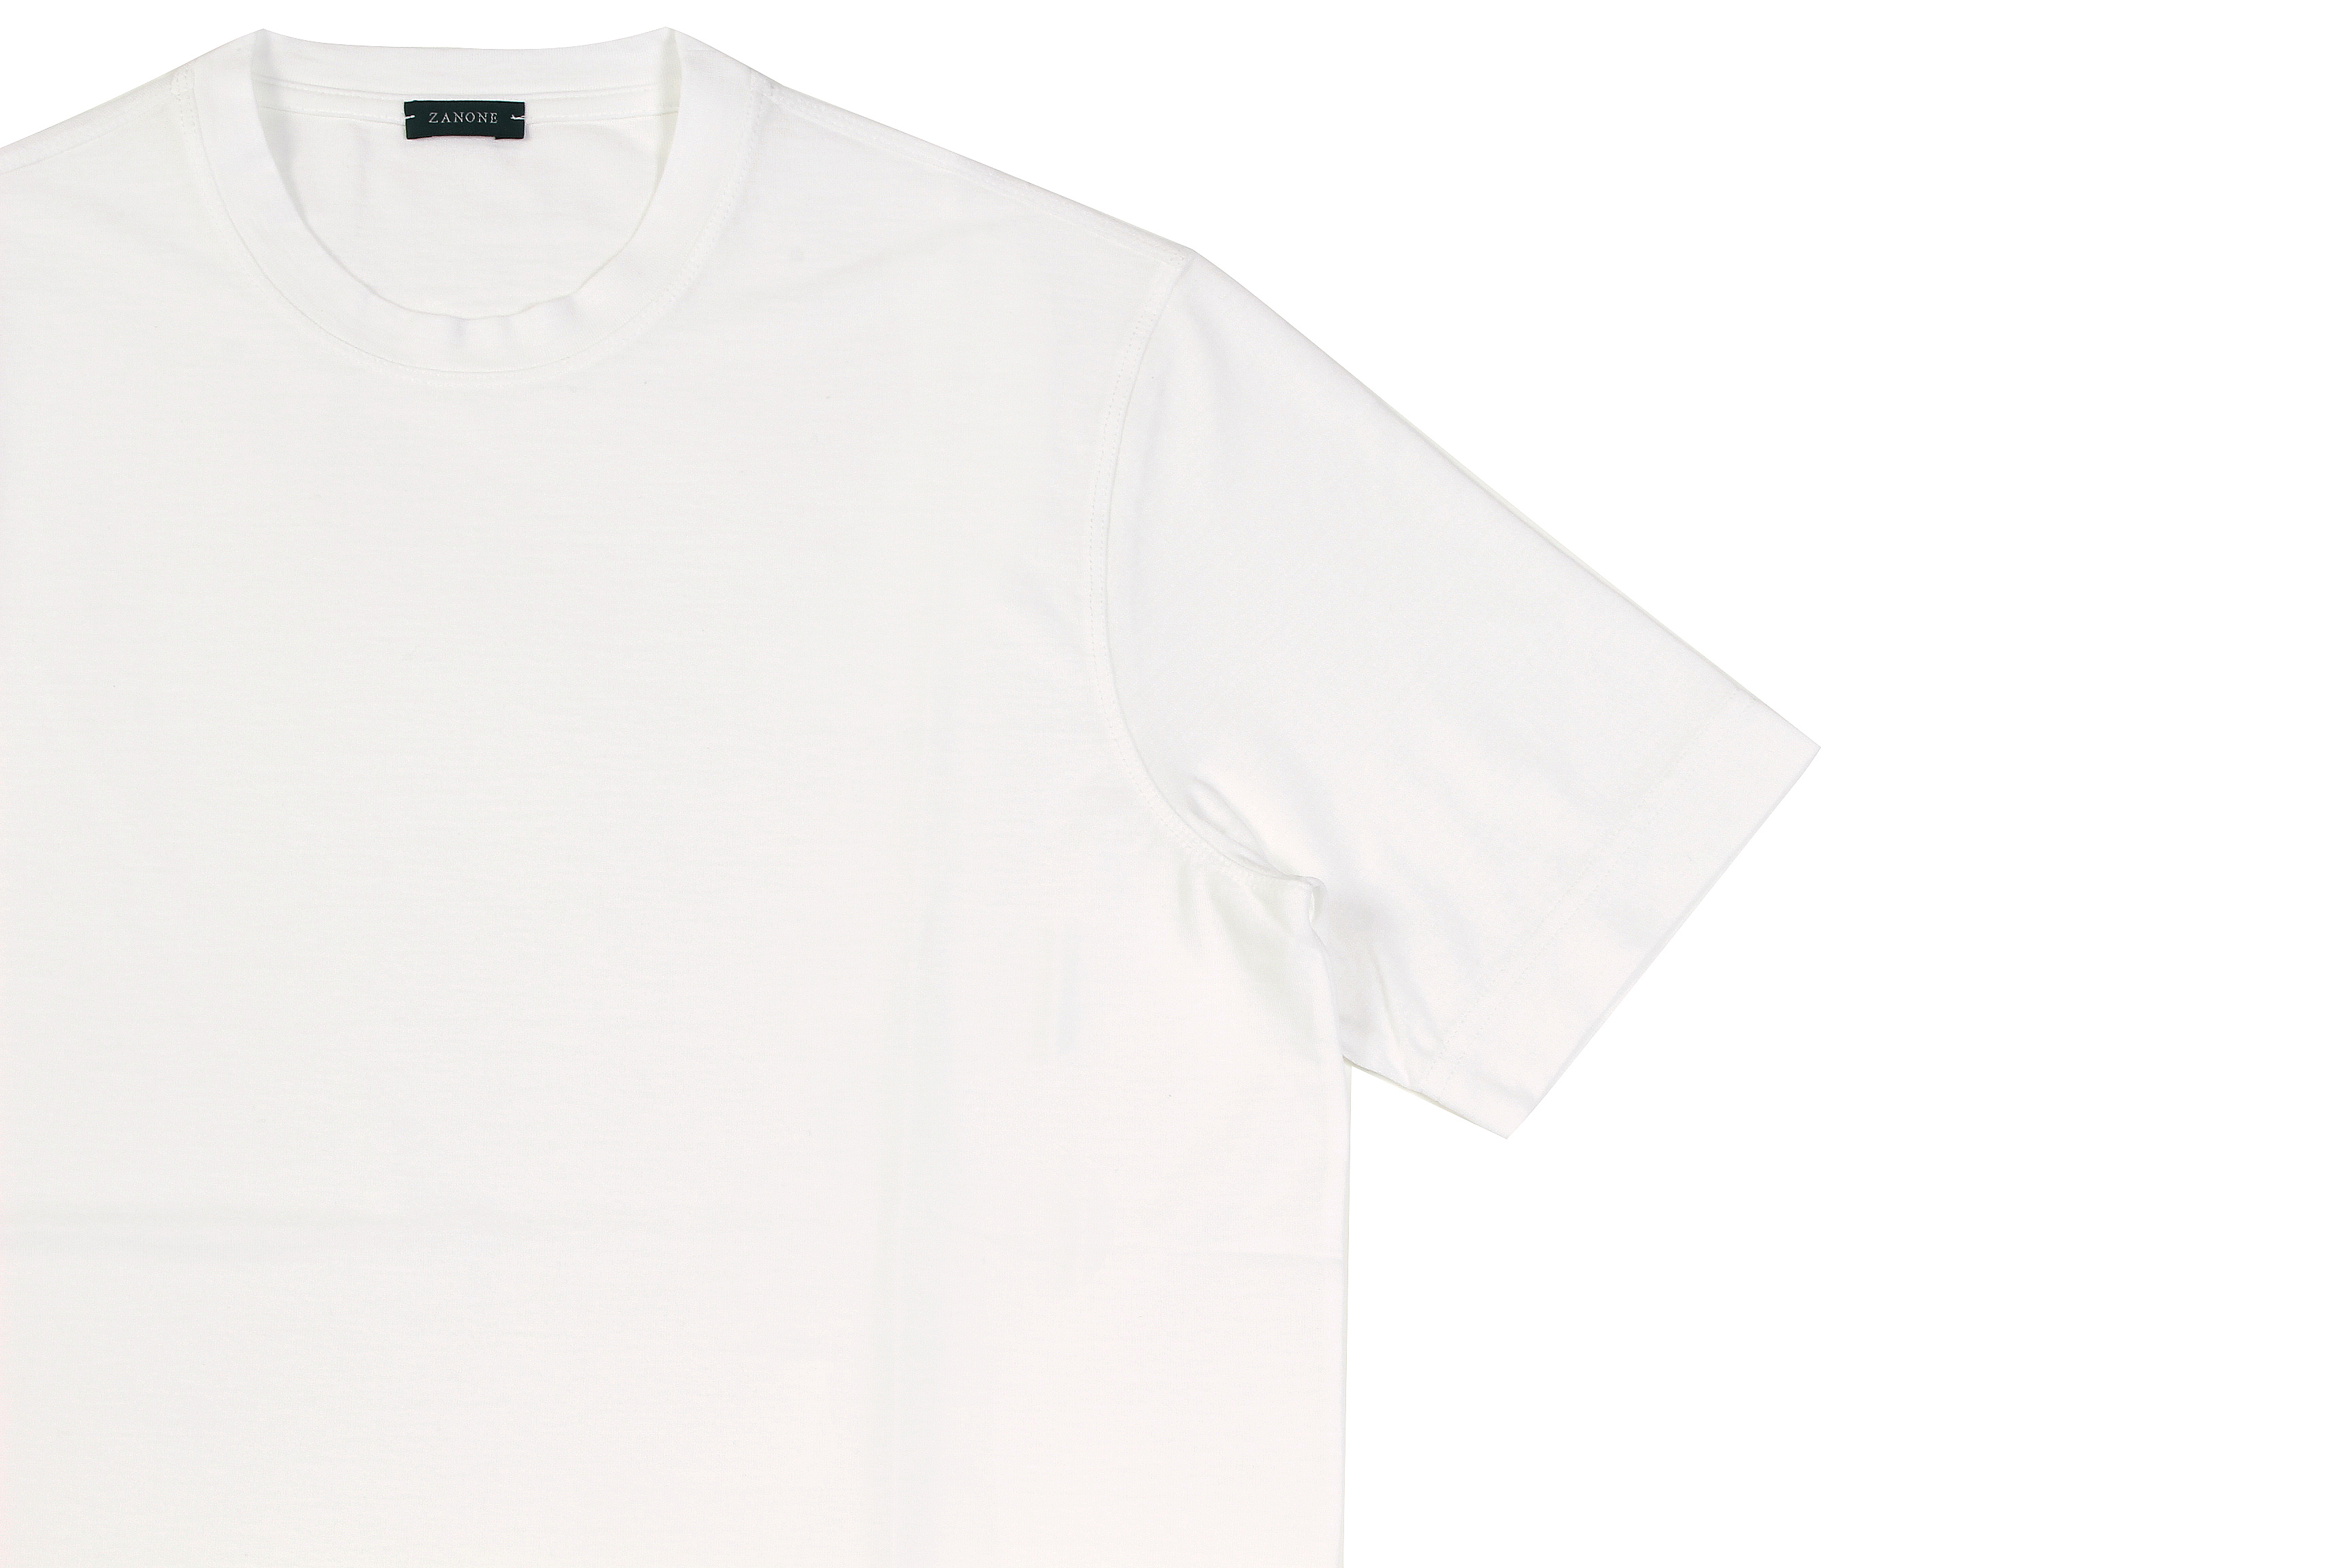 ZANONE(ザノーネ) Crew Neck T-shirt (クルーネックTシャツ) ice cotton アイスコットン Tシャツ MADE IN ITALY(イタリア製) 2020 春夏 【ご予約開始】愛知 名古屋 altoediritto アルトエデリット tee 夏Tシャツ